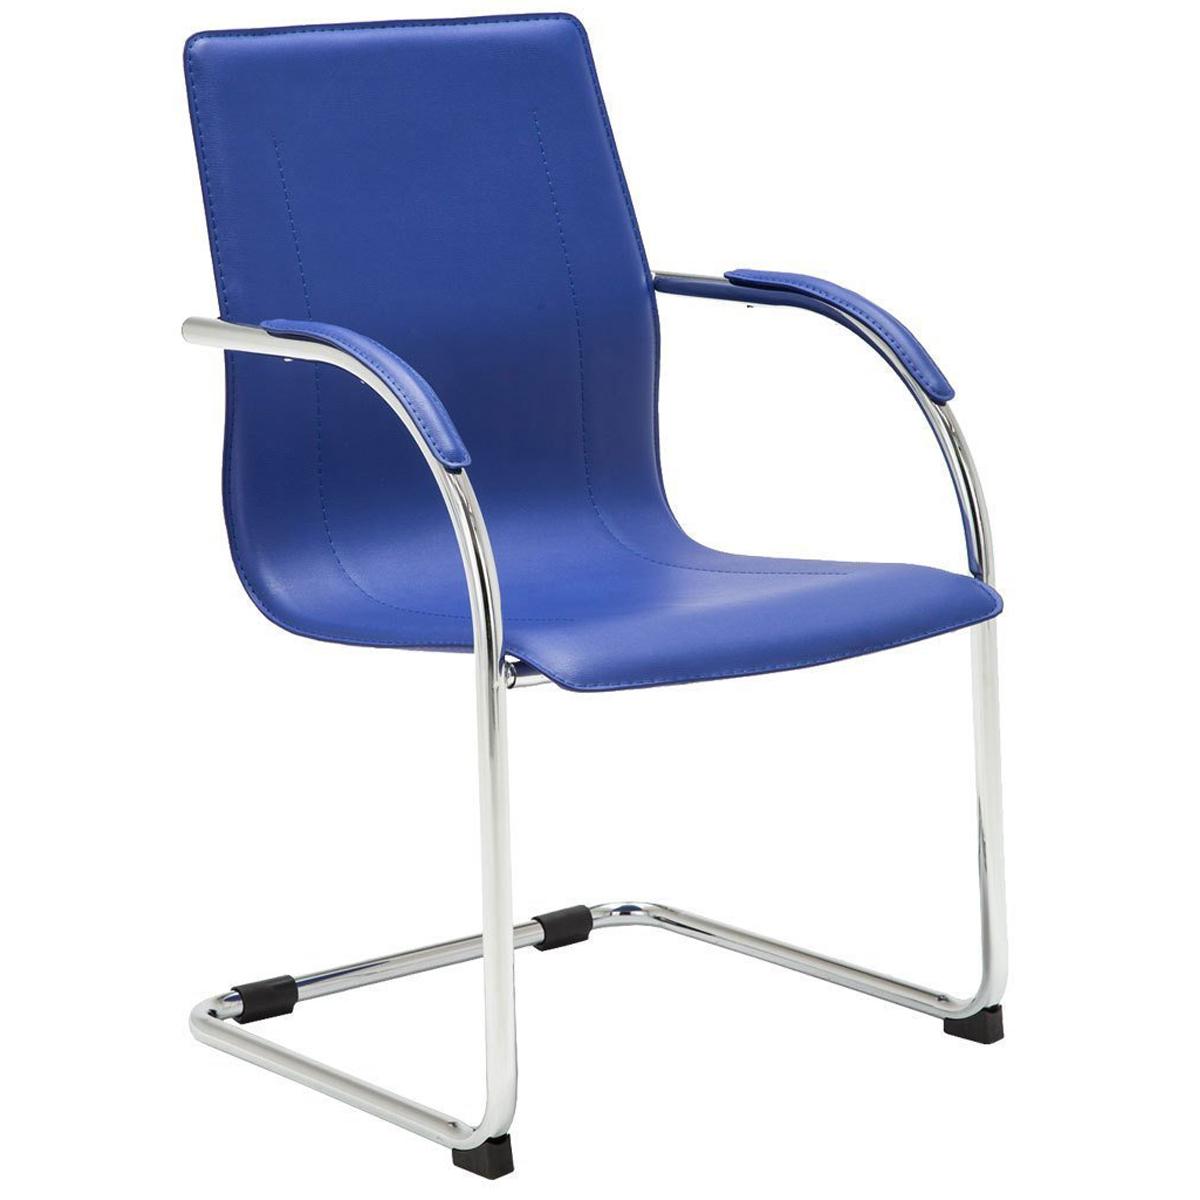 Chaise Visiteur FLAP, Structure Métallique, Design élégant et moderne, Cuir, Bleu